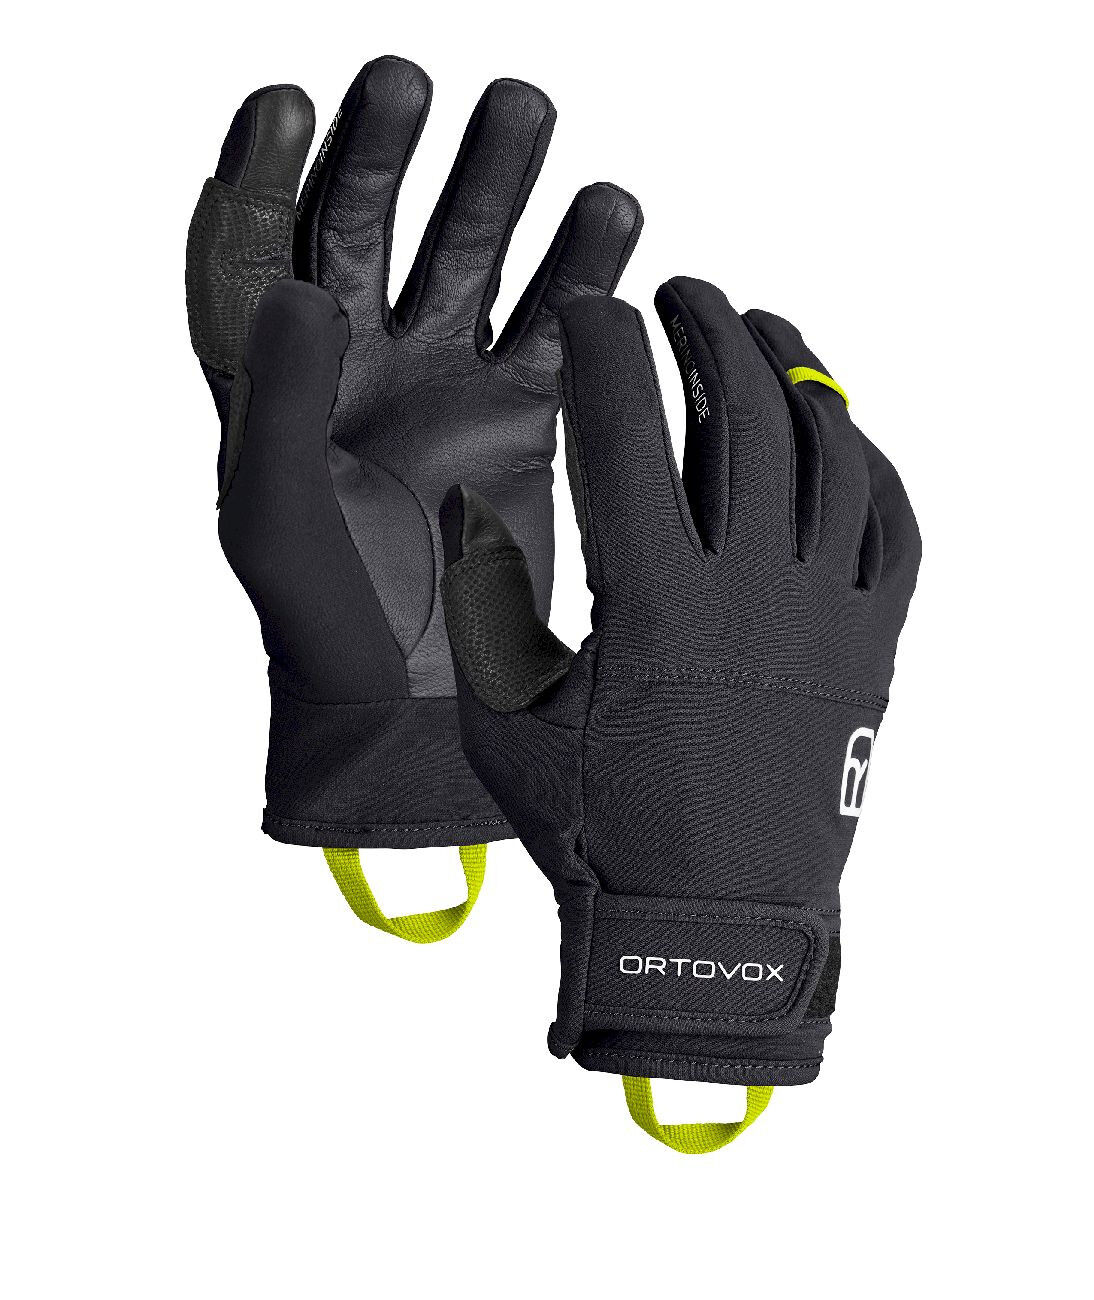 Ortovox Tour Light Glove - Ski gloves - Men's